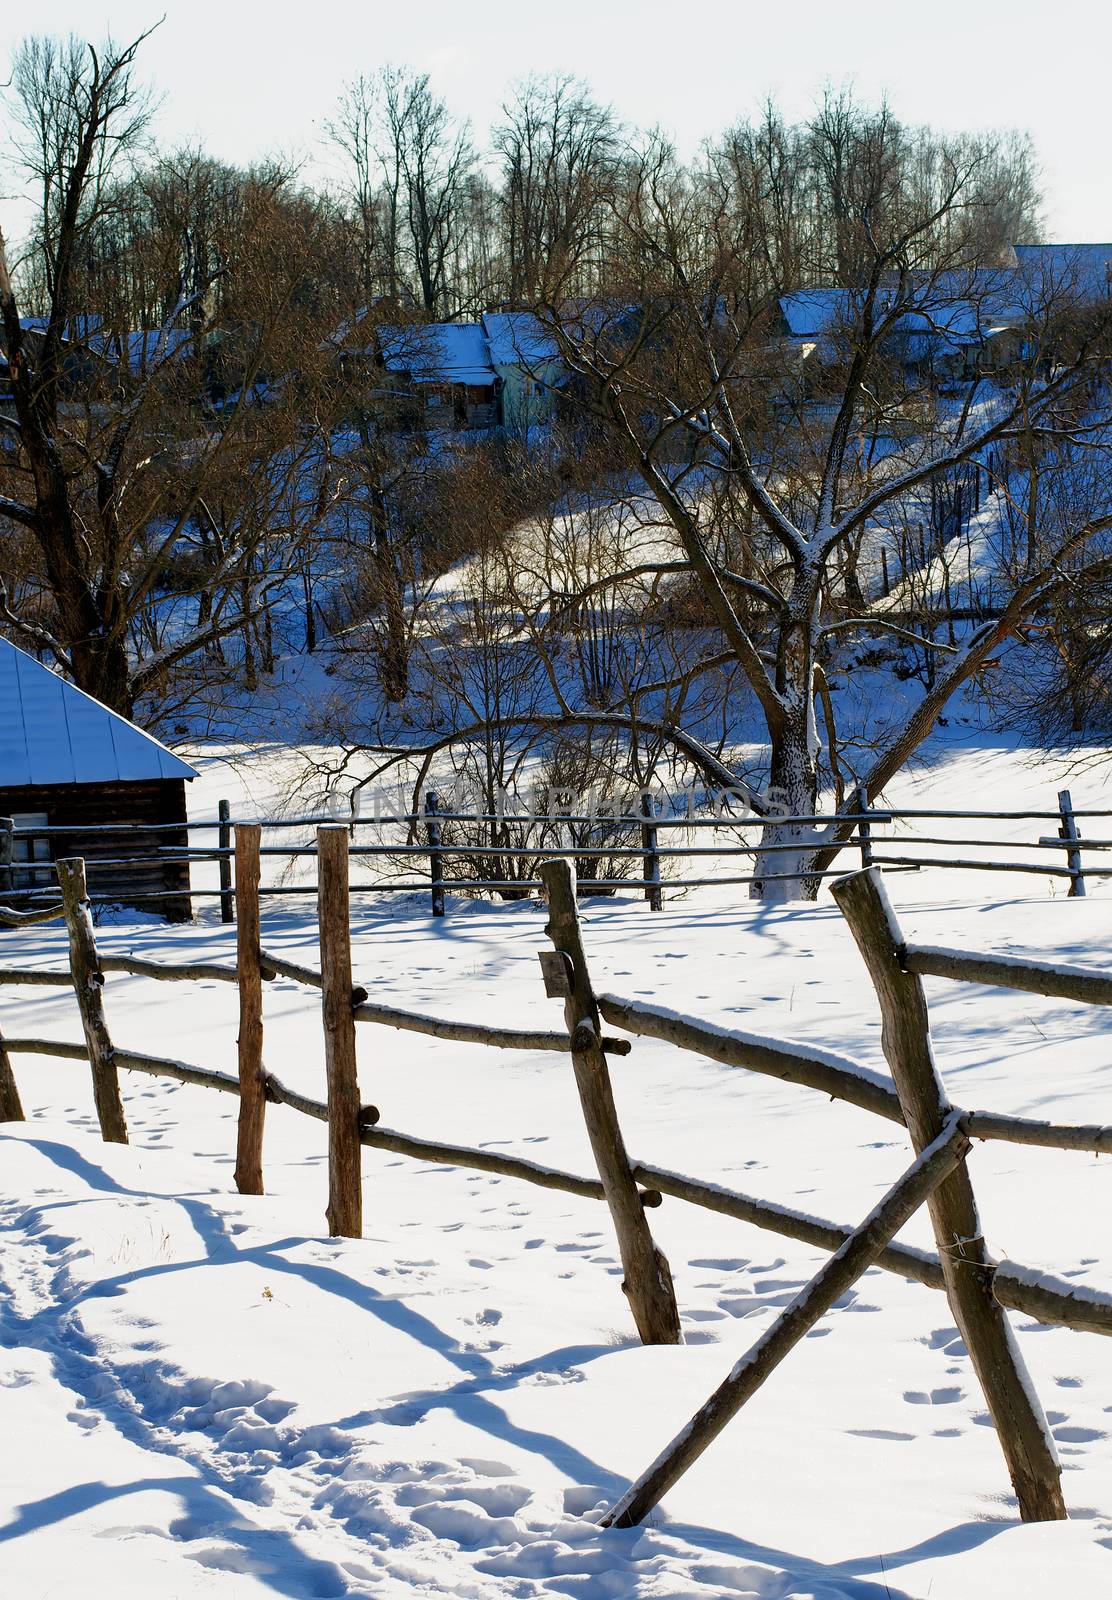 Rustic Winter Landscape by zhekos